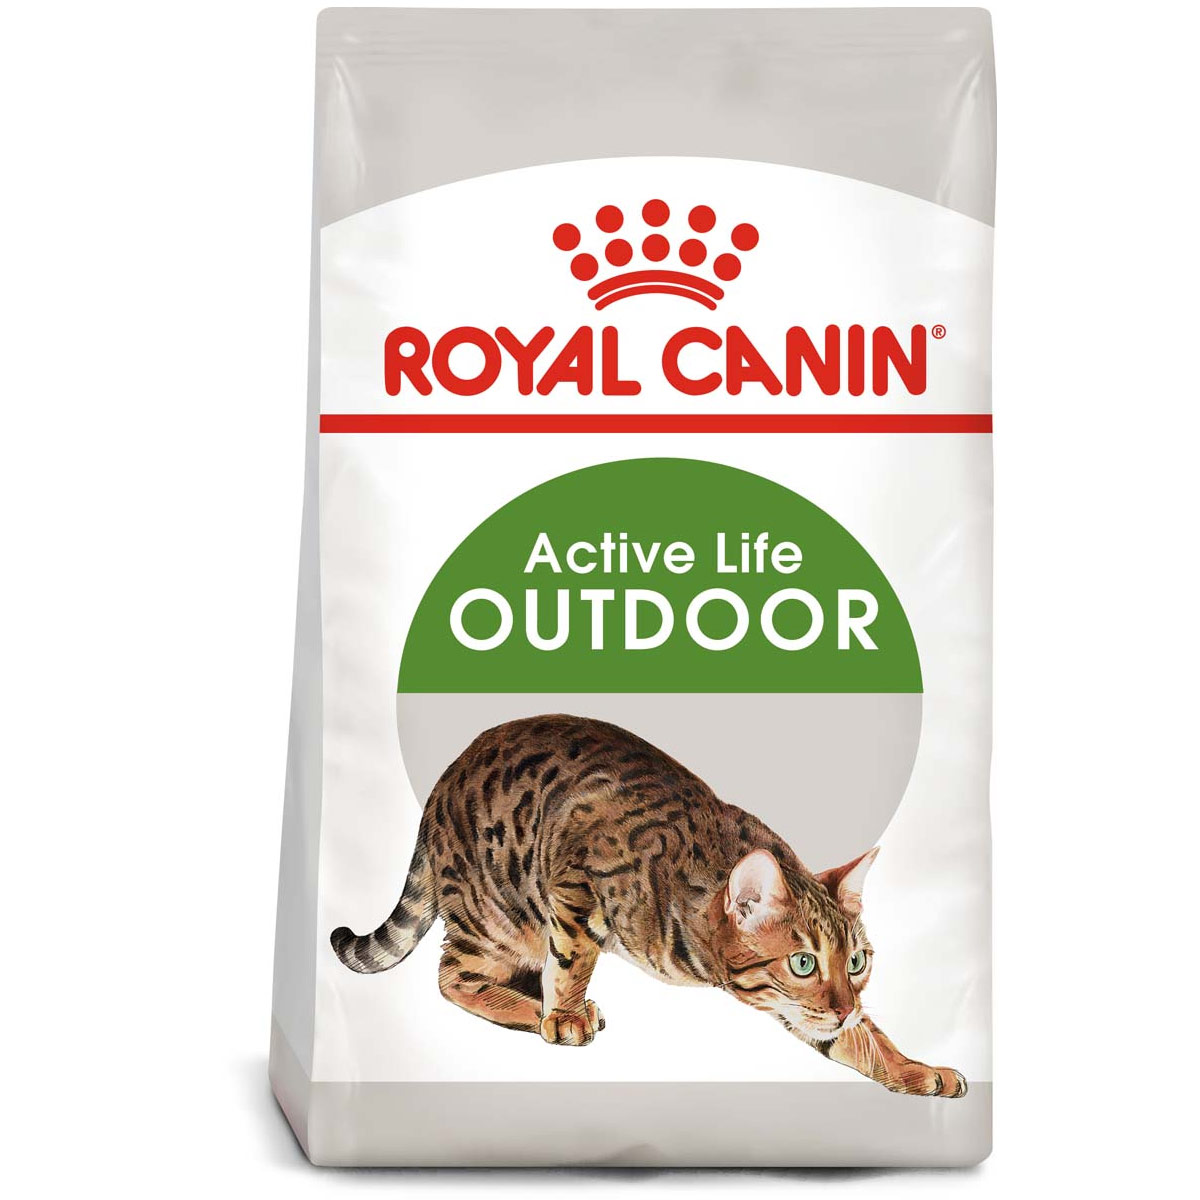 ROYAL CANIN OUTDOOR granule pro venkovní kočky 2 kg